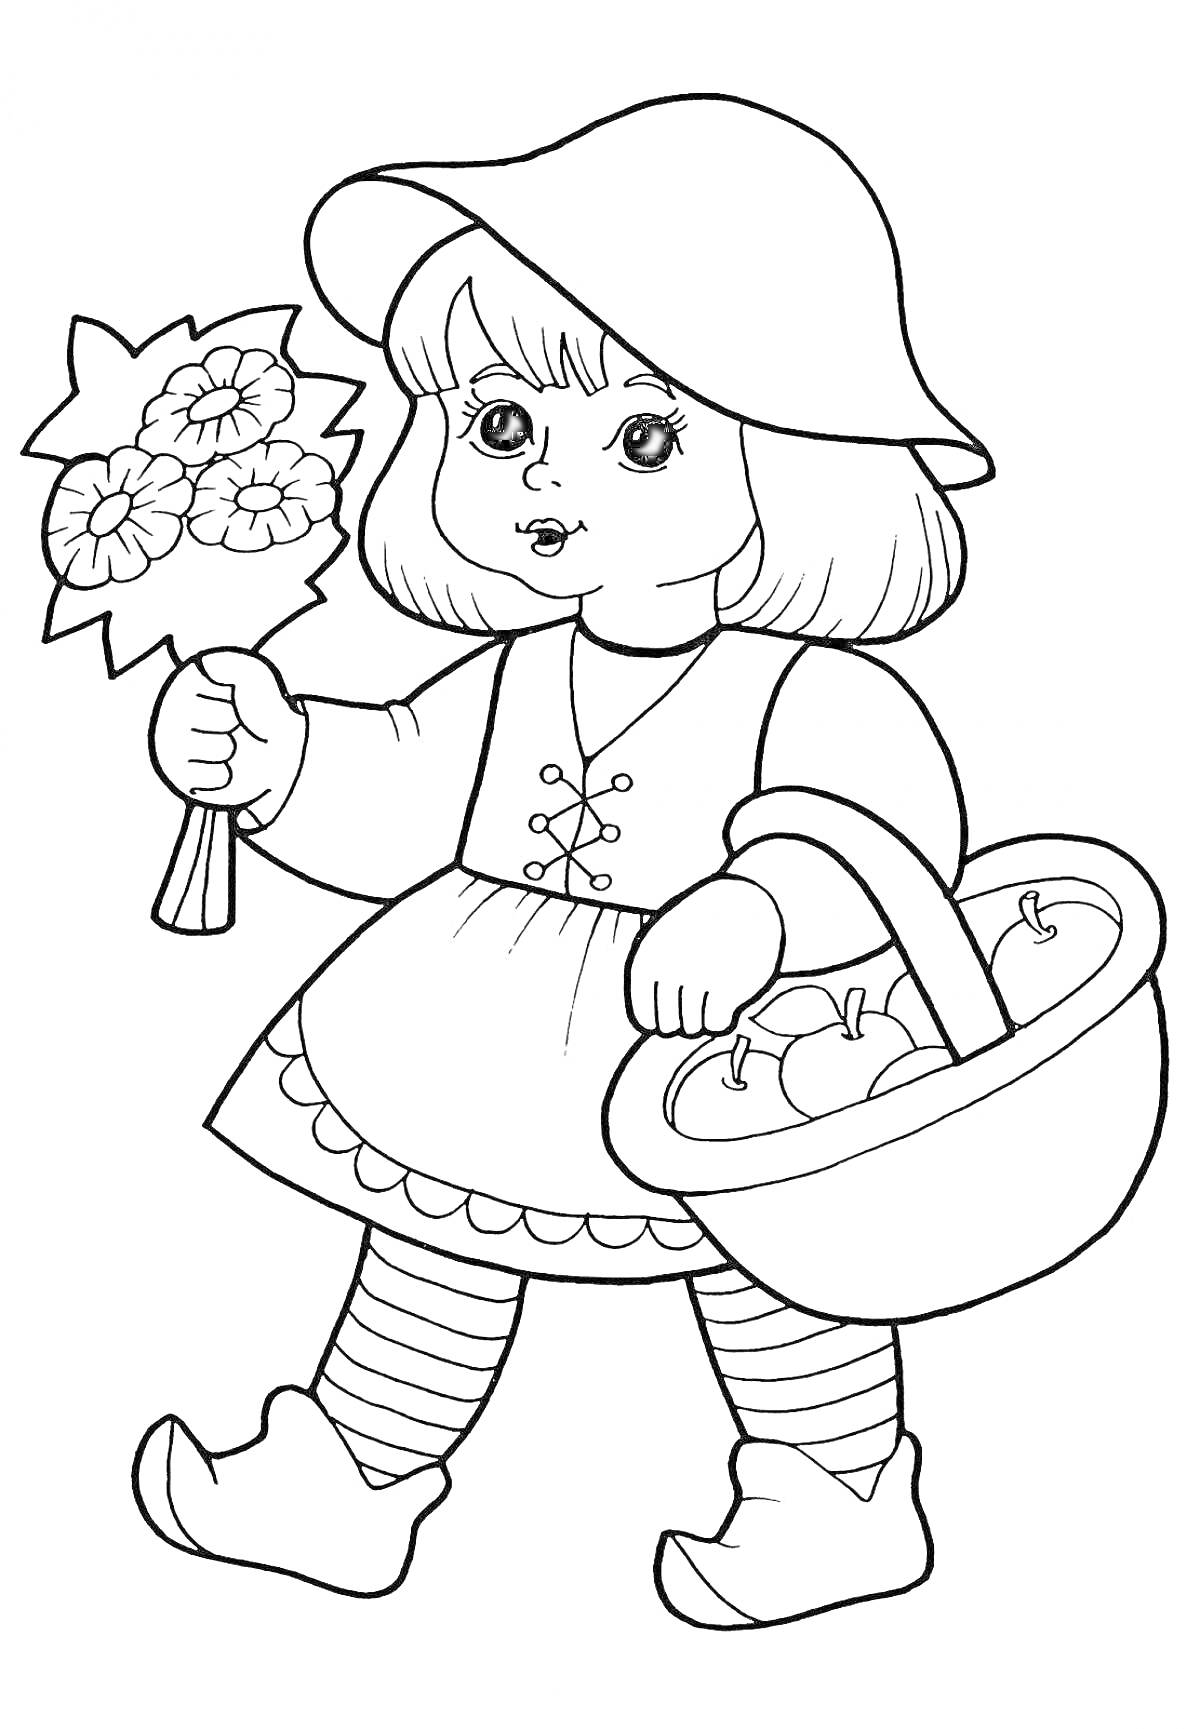 Раскраска Девочка в шляпе с цветами и корзиной яблок